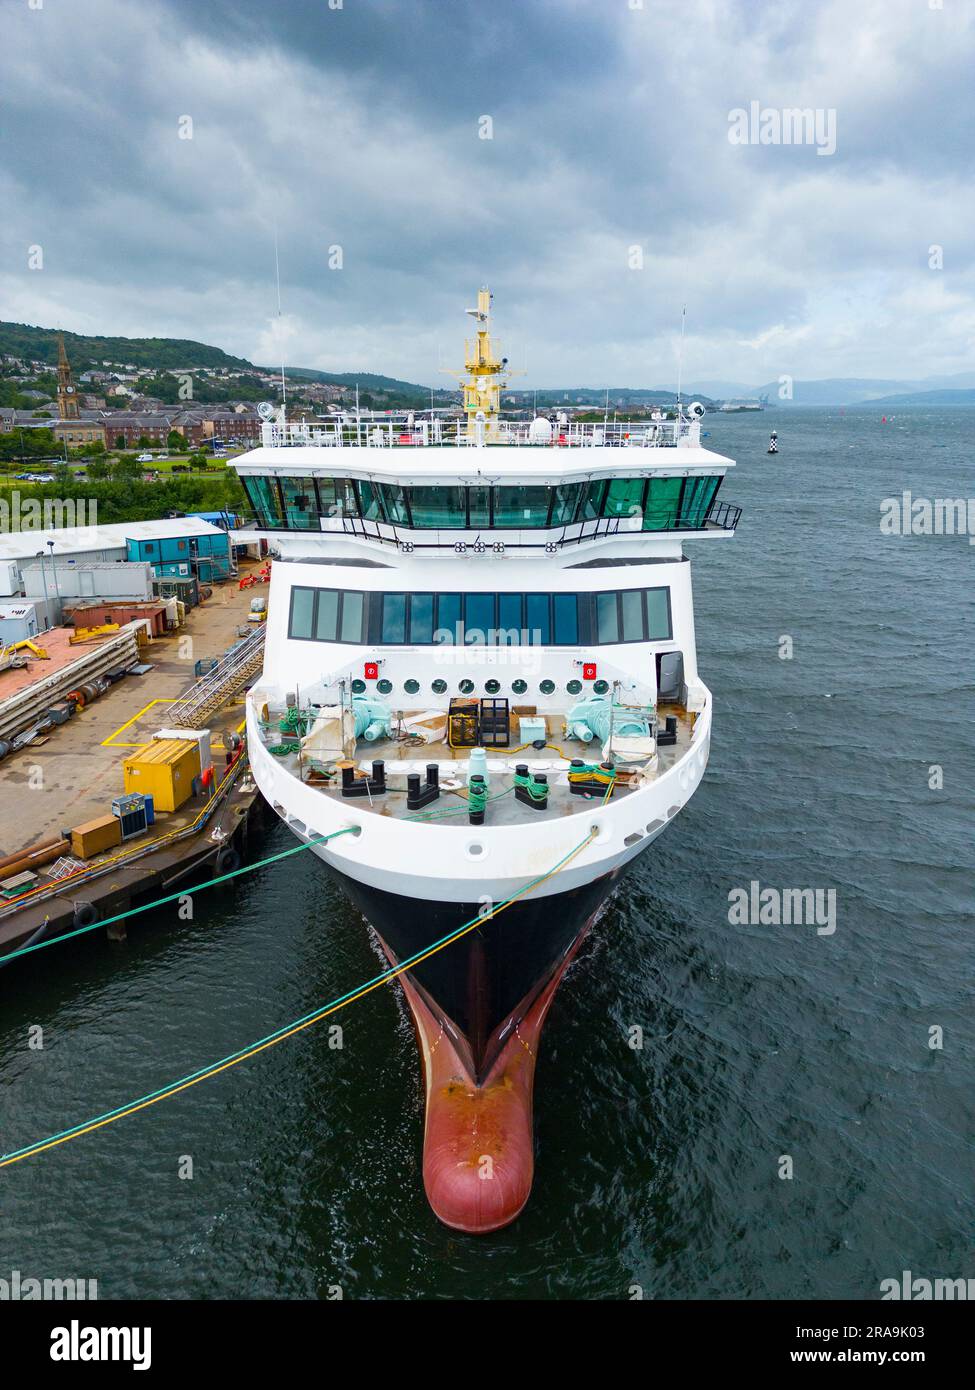 Le ultime viste aeree del traghetto passeggeri MV Glen Sannox in fase di costruzione presso il cantiere navale Ferguson di Port Glasgow. Scozia, Regno Unito Foto Stock